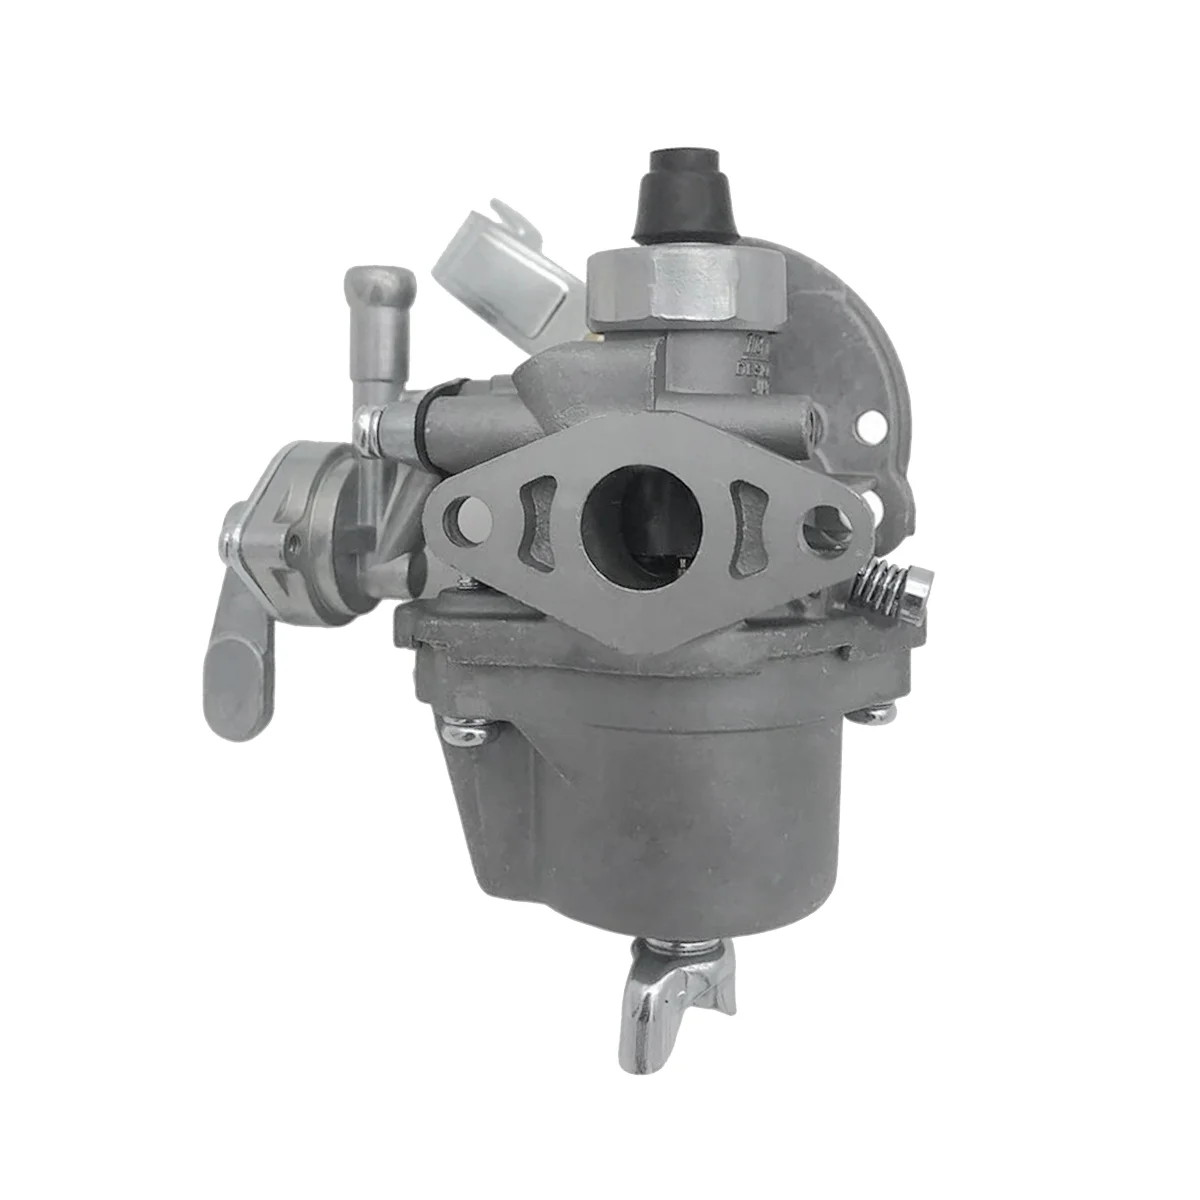 

Карбюратор для бензинового двигателя ROBIN NB411 EC04 BG411 CG400, механические карбюраторы